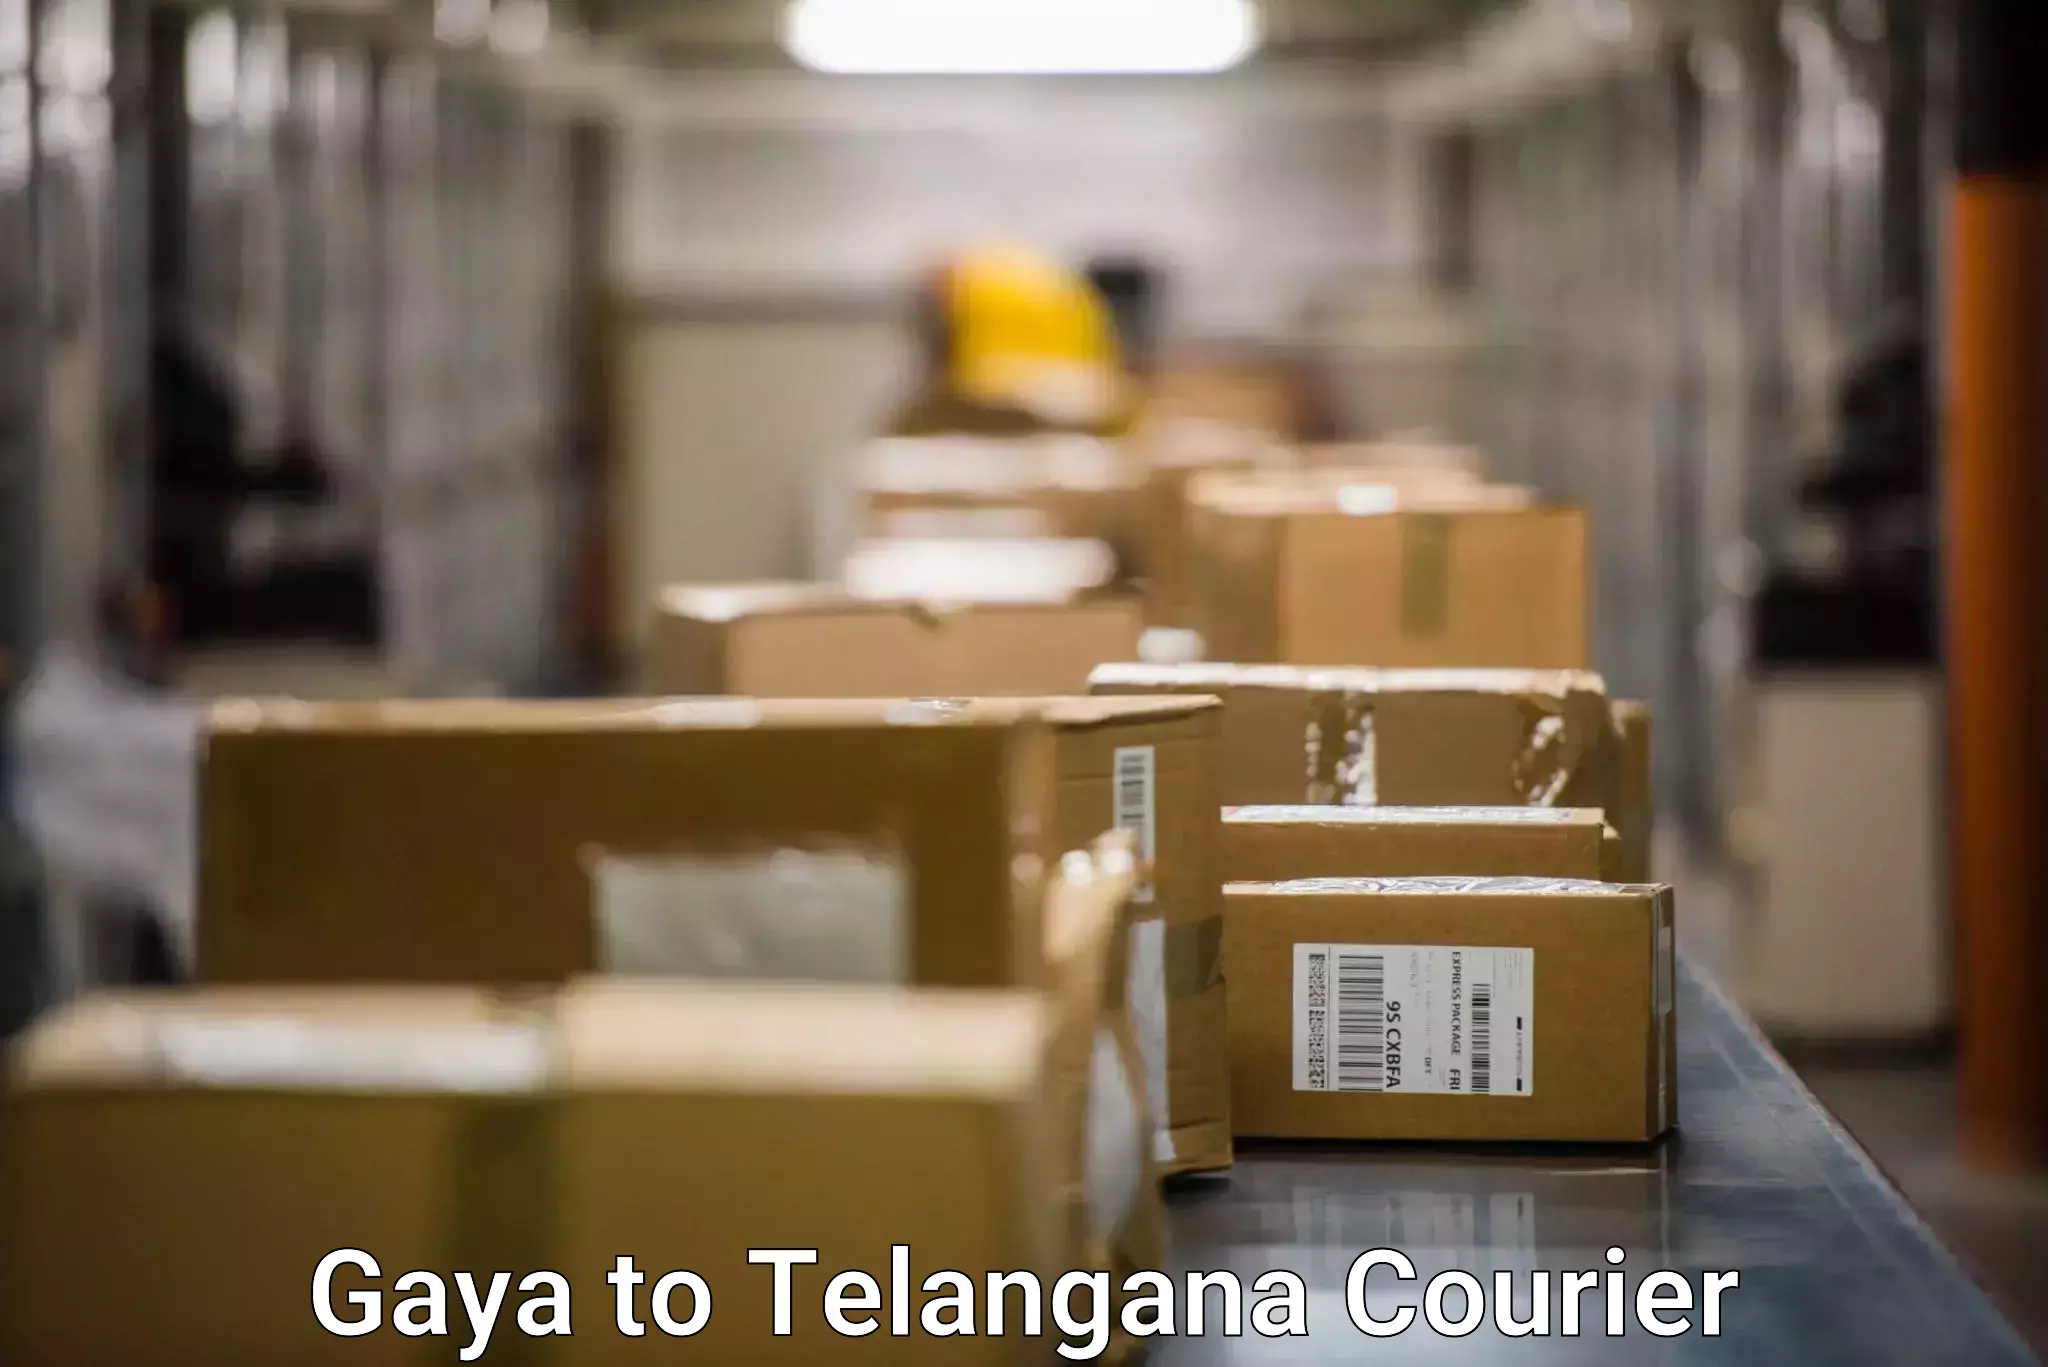 Full-service courier options Gaya to Thungathurthi